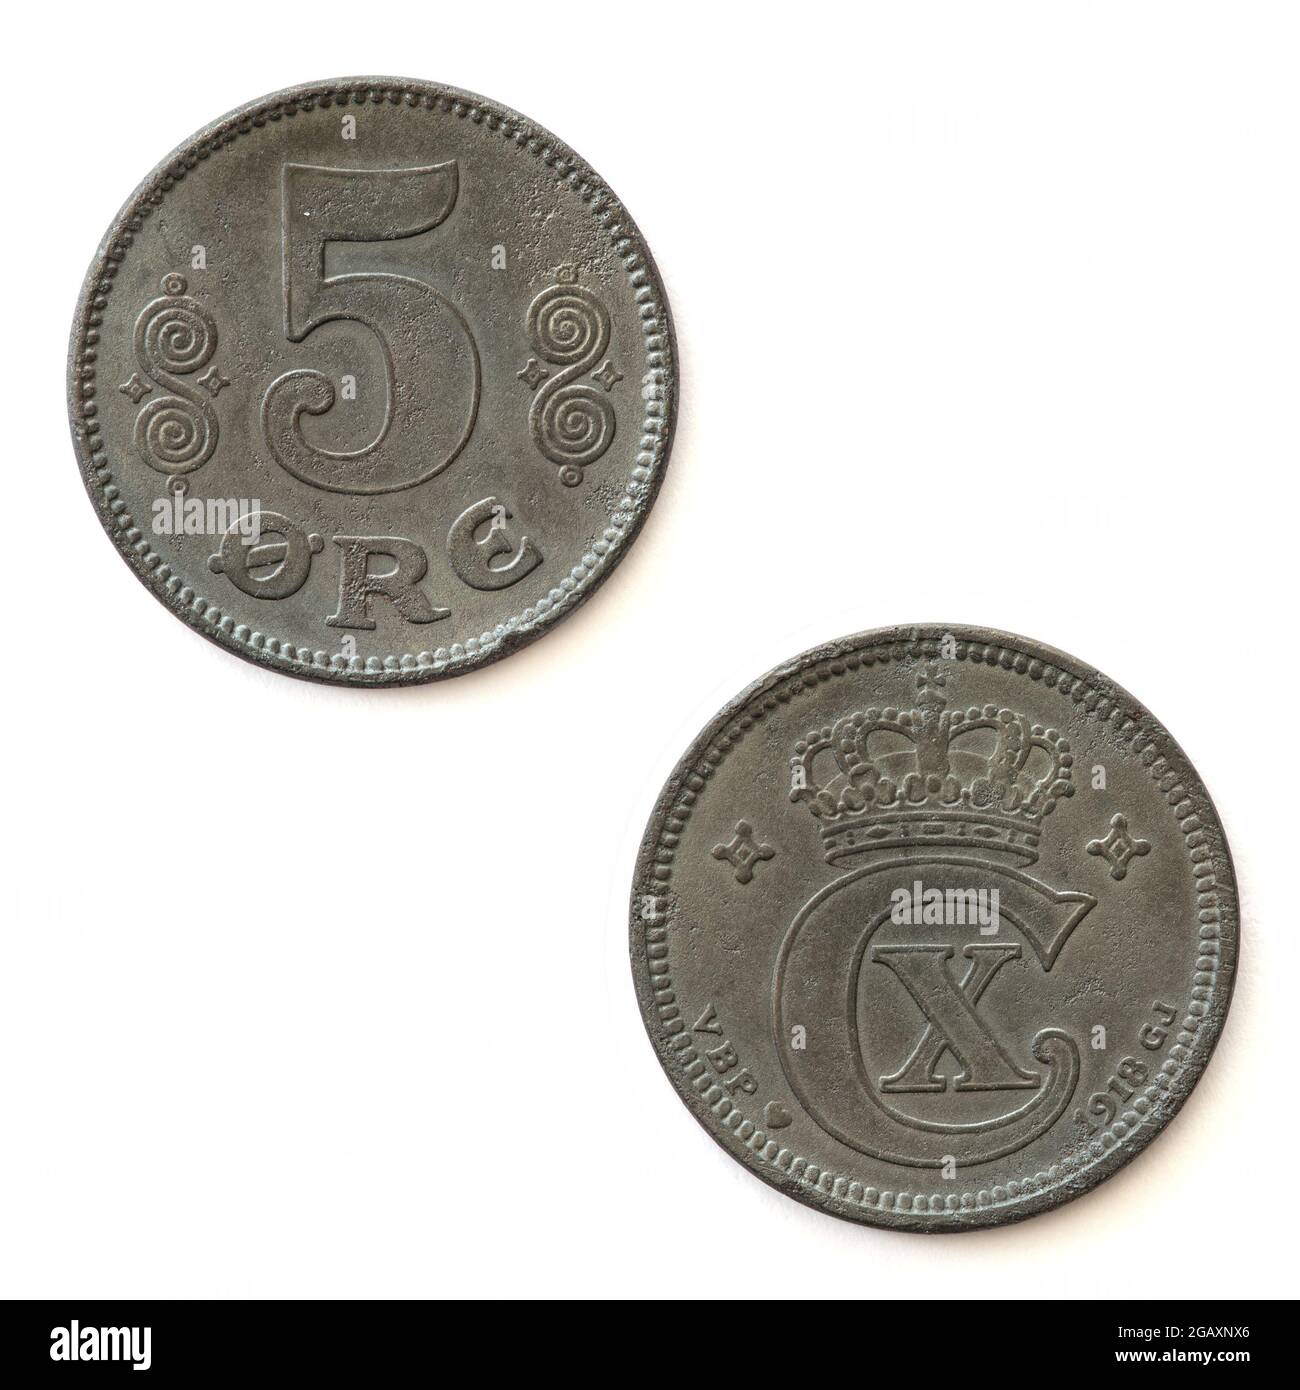 5 Moneda de Dinamarca (1918) fabricada en hierro Foto de stock